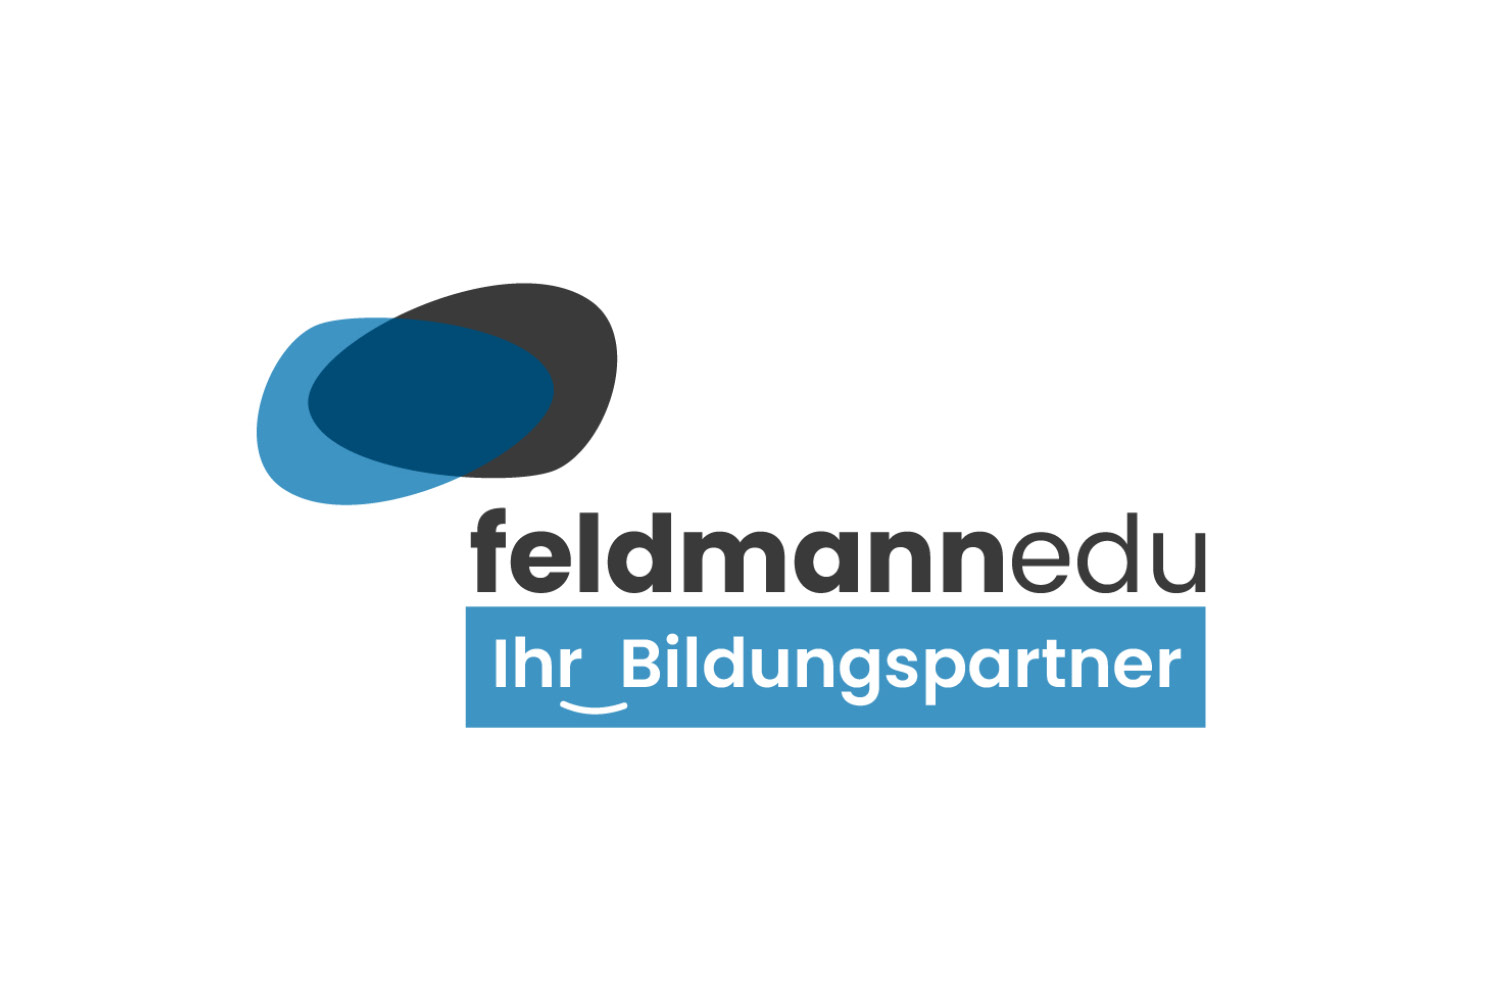 FeldmannEdu